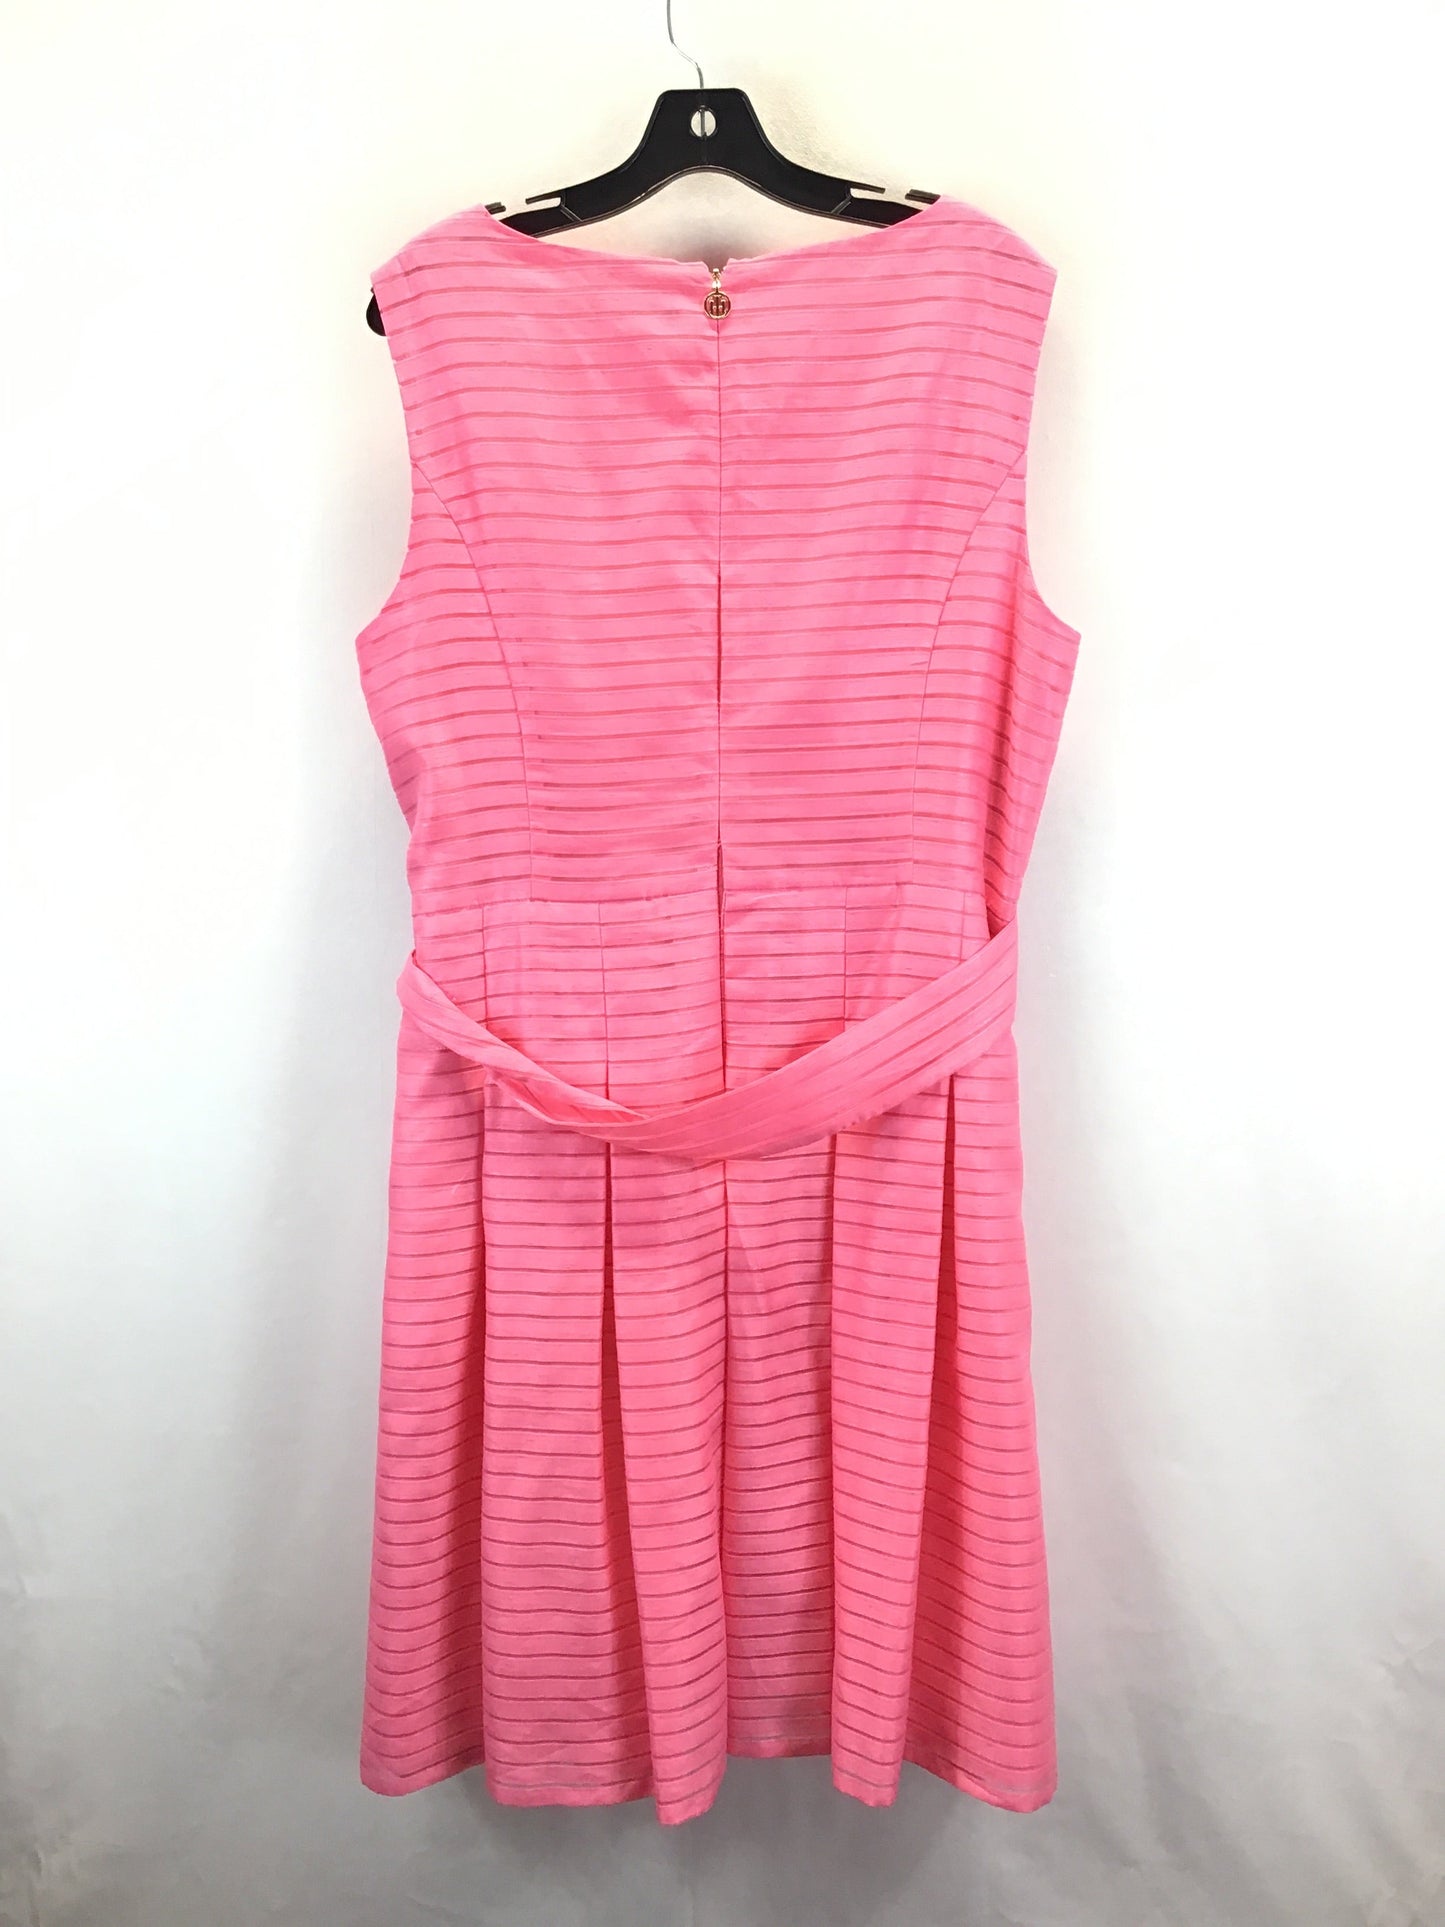 Pink Dress Casual Midi Tommy Hilfiger, Size 2x